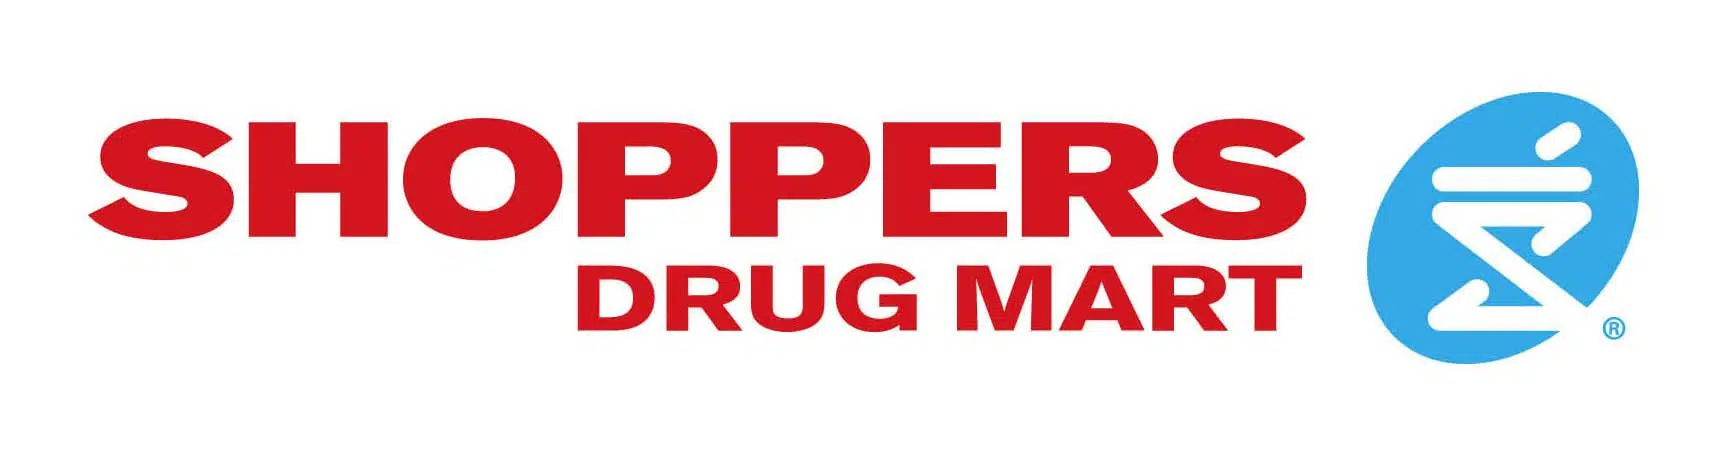 Image result for shoppers drug mart